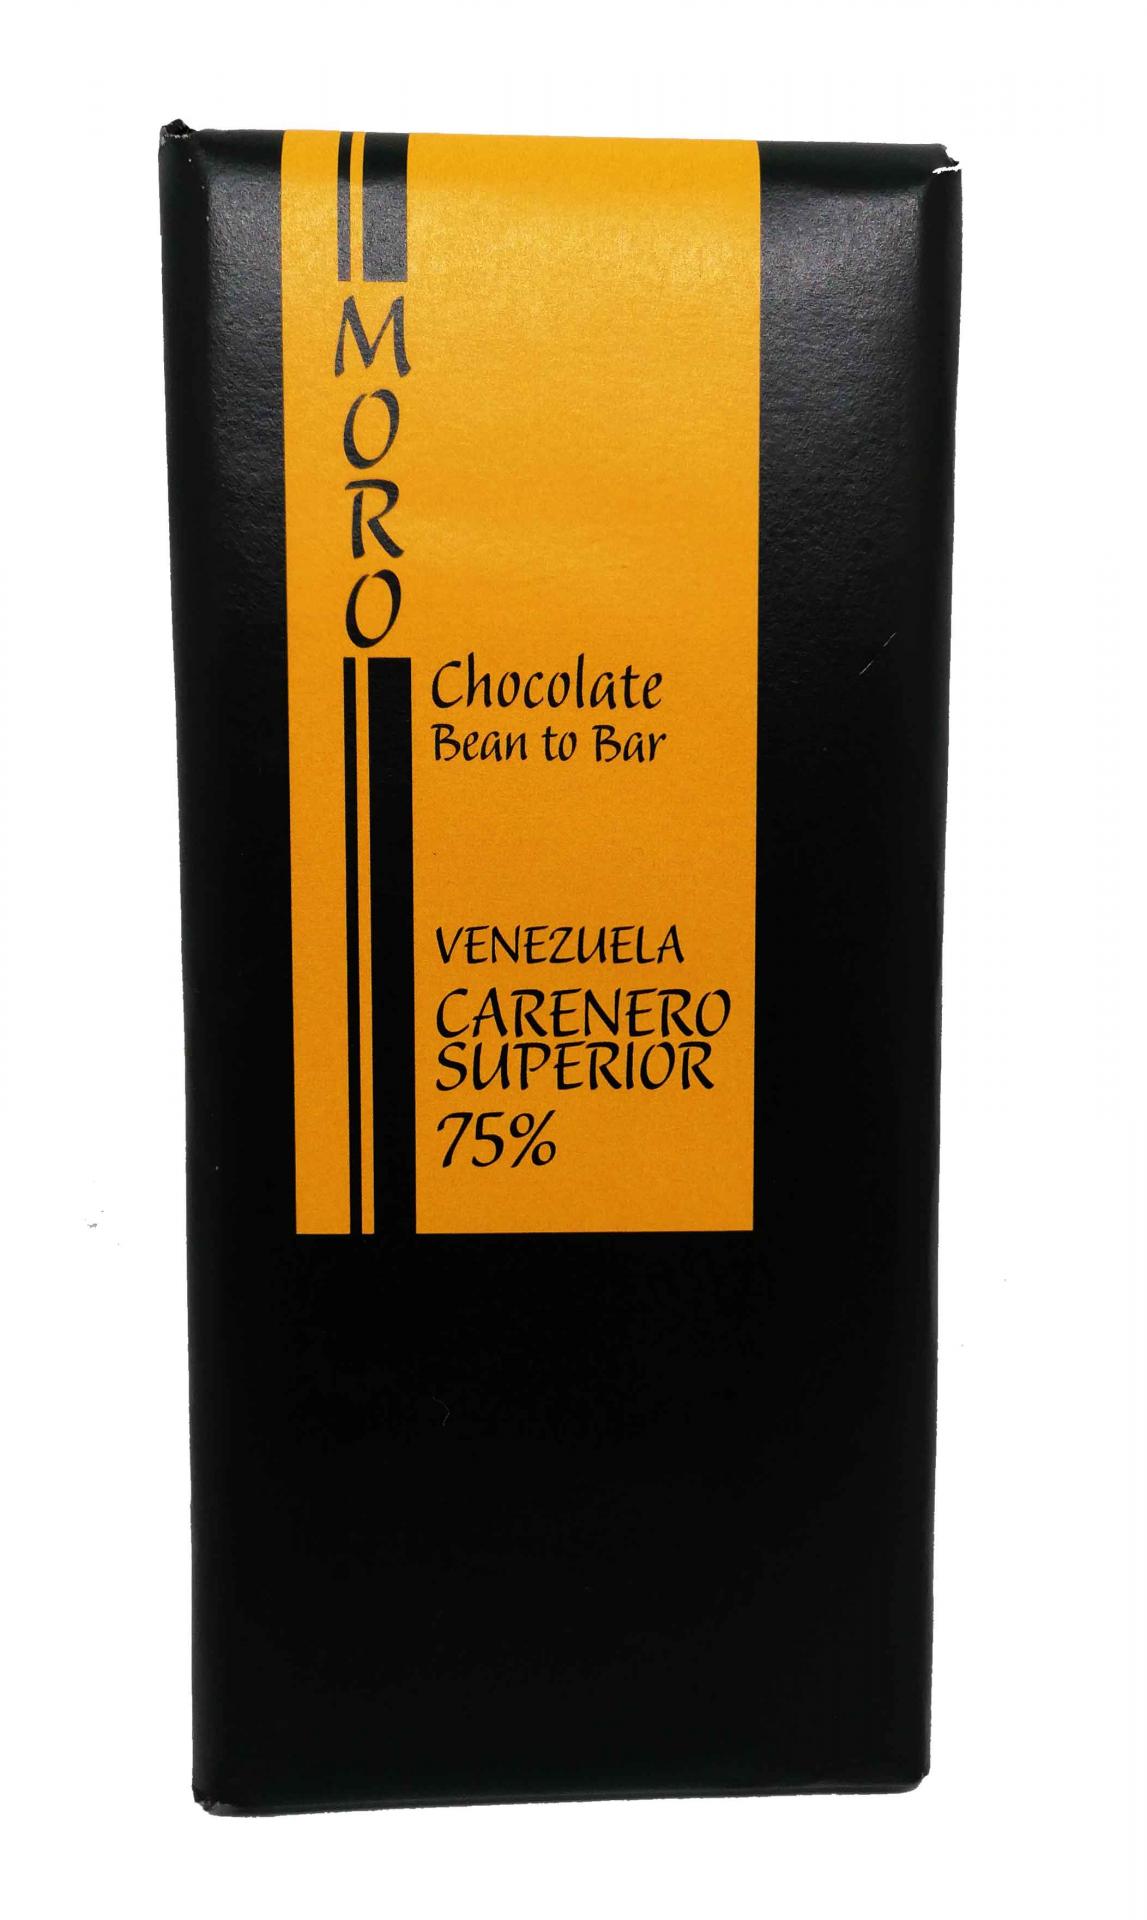 Chocolate Carenero Superior 75% Venezuela - Chocolates Moro